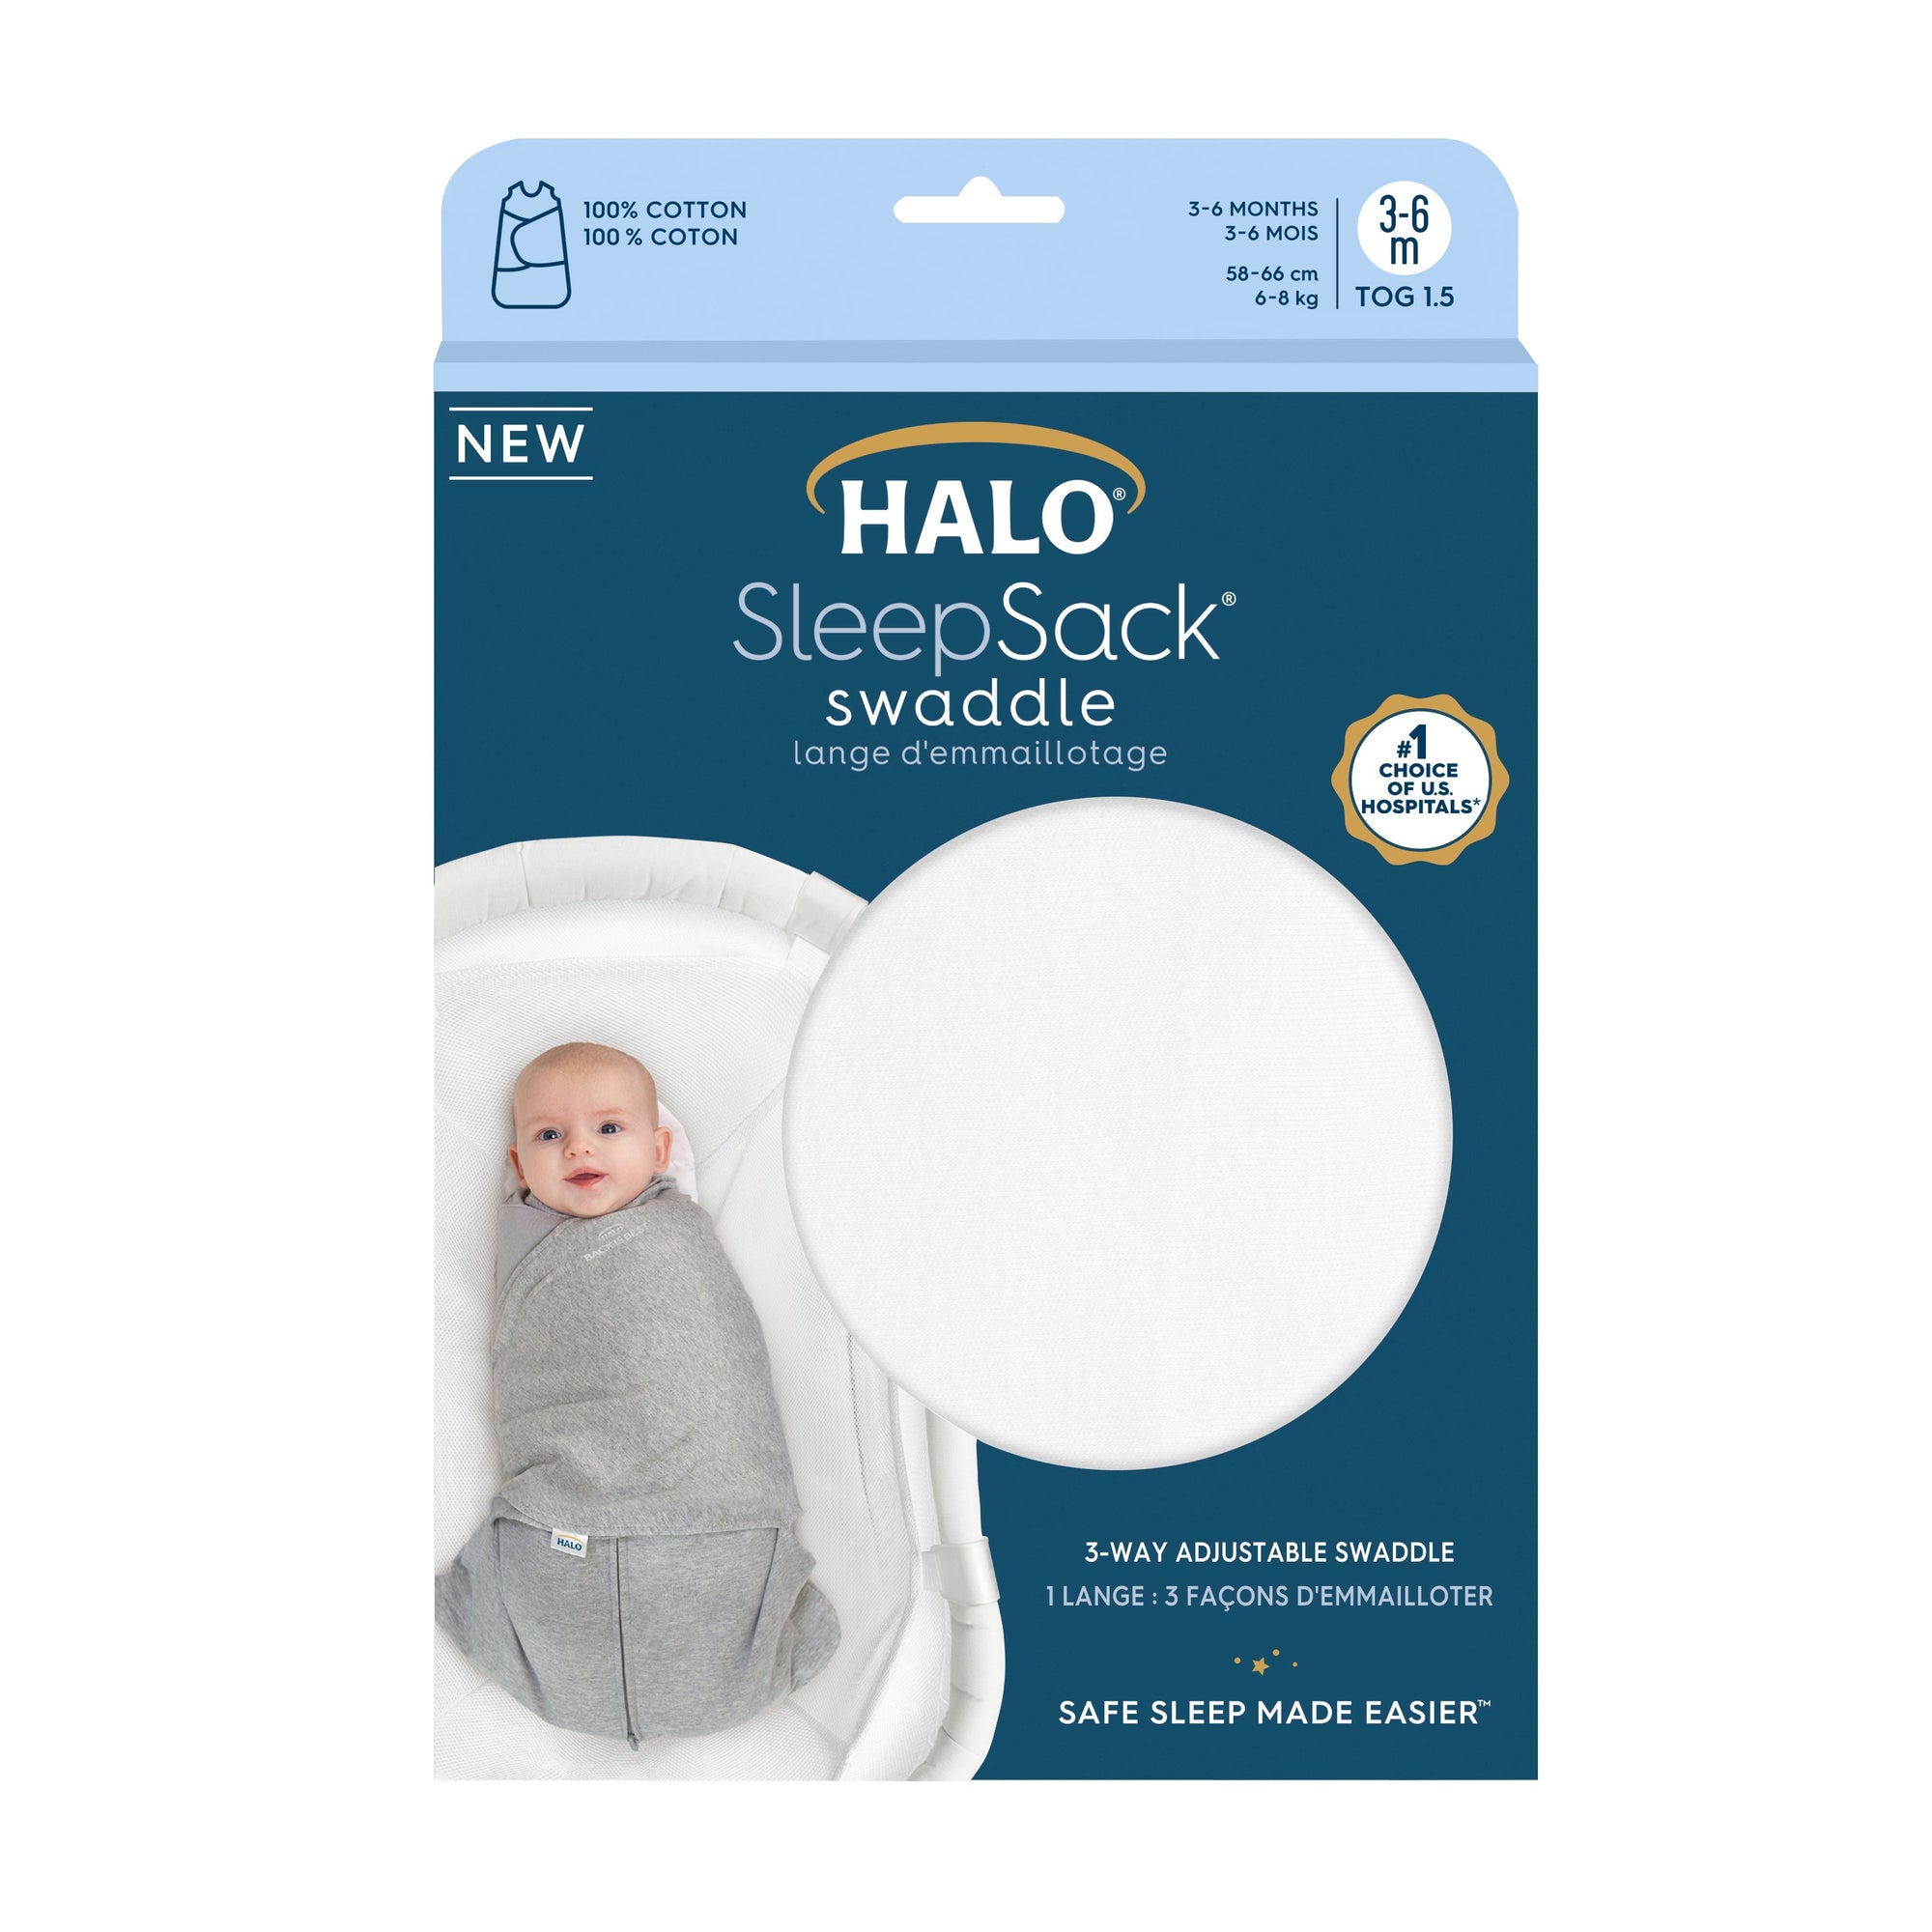 HALO® SleepSack® Swaddle (3-6M) 1.5 TOG - White